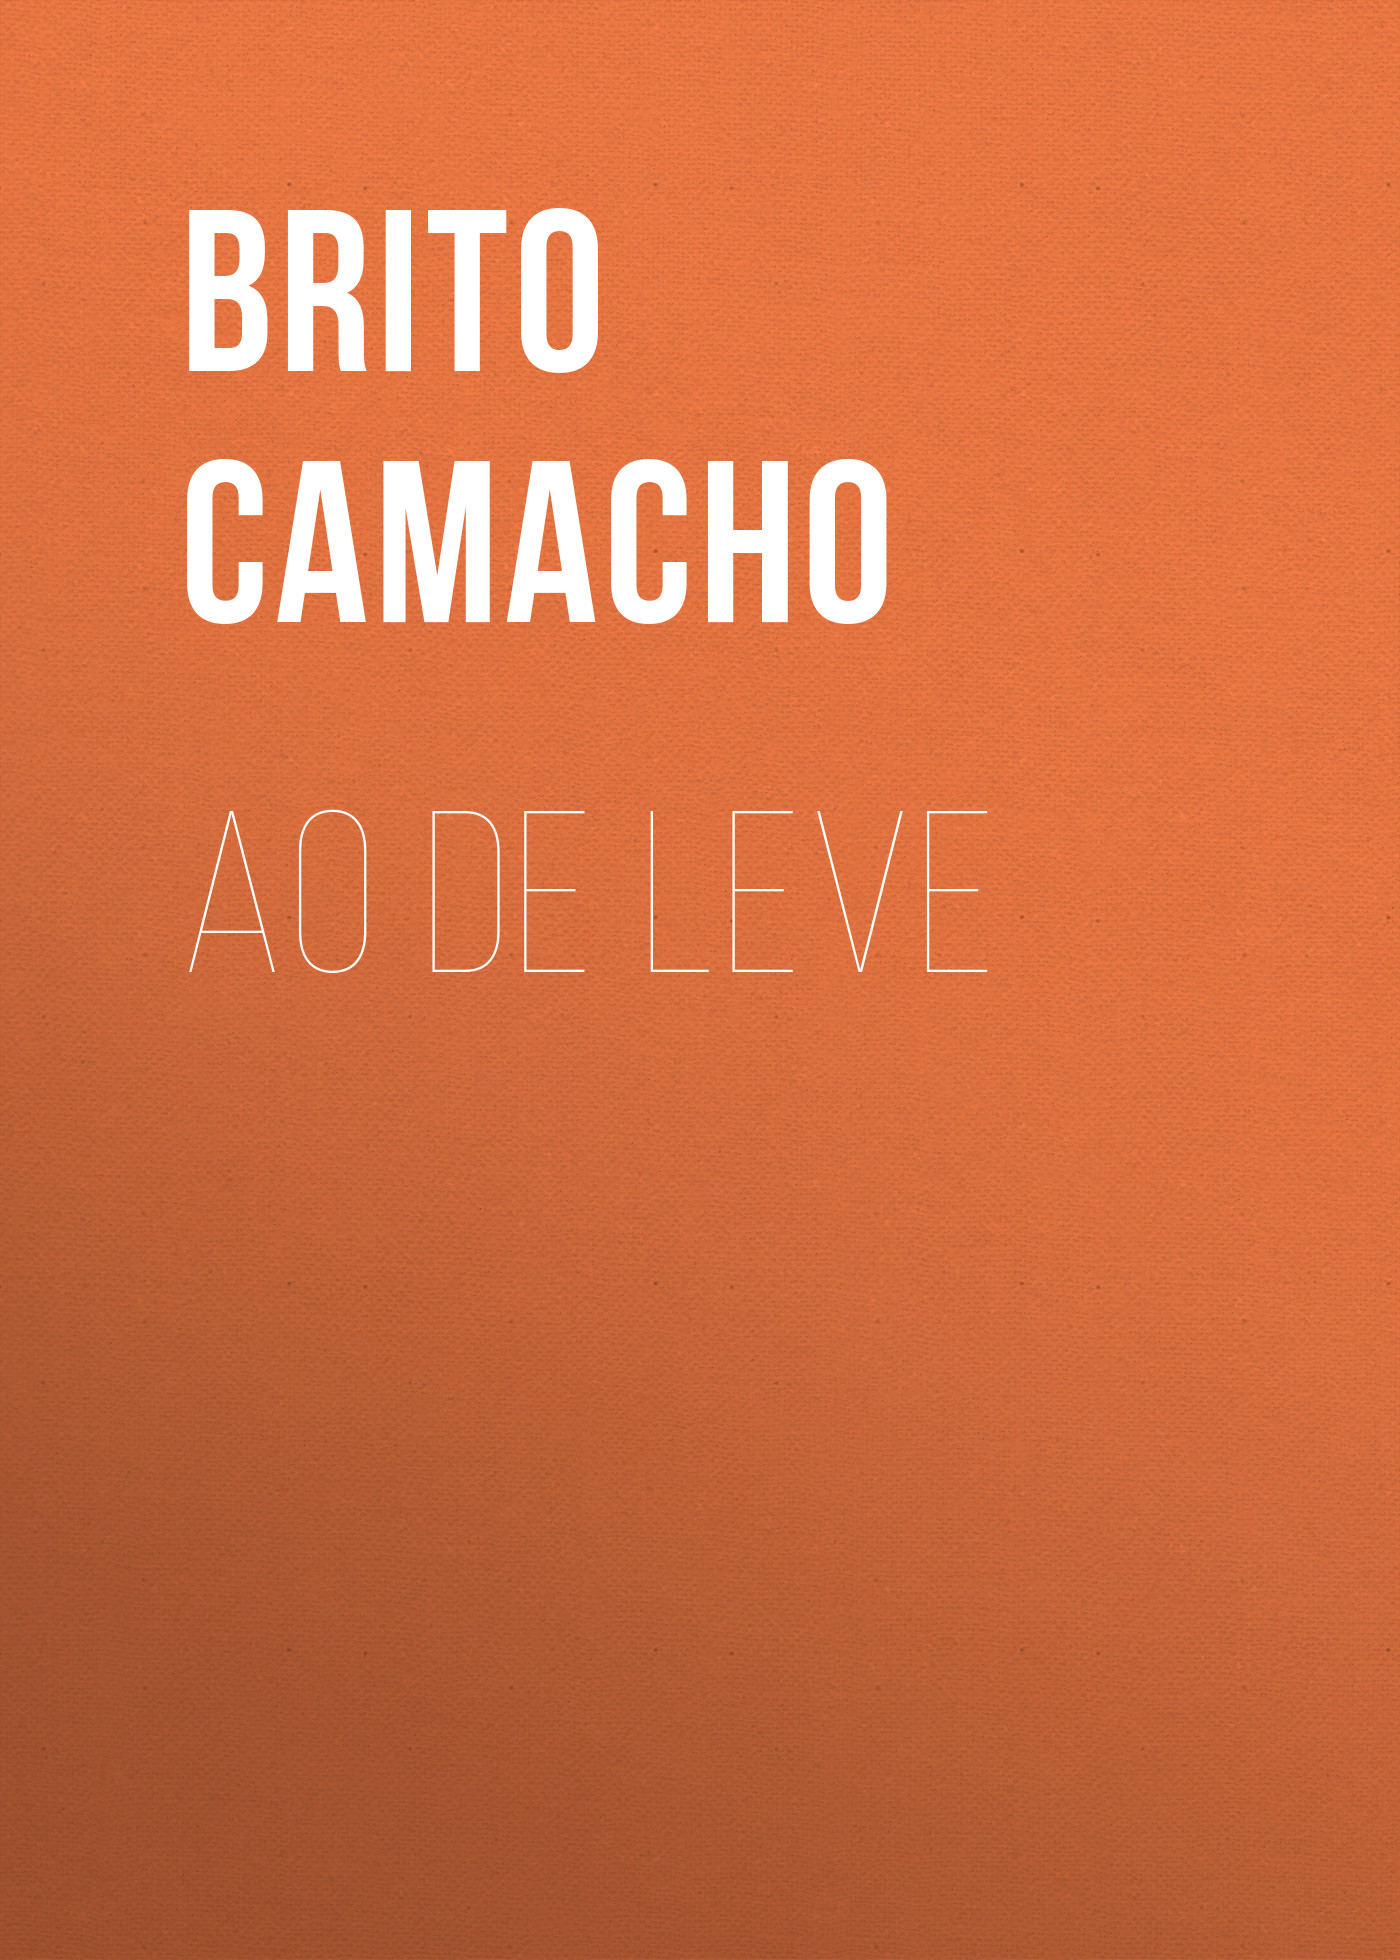 Книга Ao de Leve из серии , созданная Brito Camacho, может относится к жанру Зарубежная старинная литература, Зарубежная классика. Стоимость электронной книги Ao de Leve с идентификатором 24181116 составляет 0.90 руб.